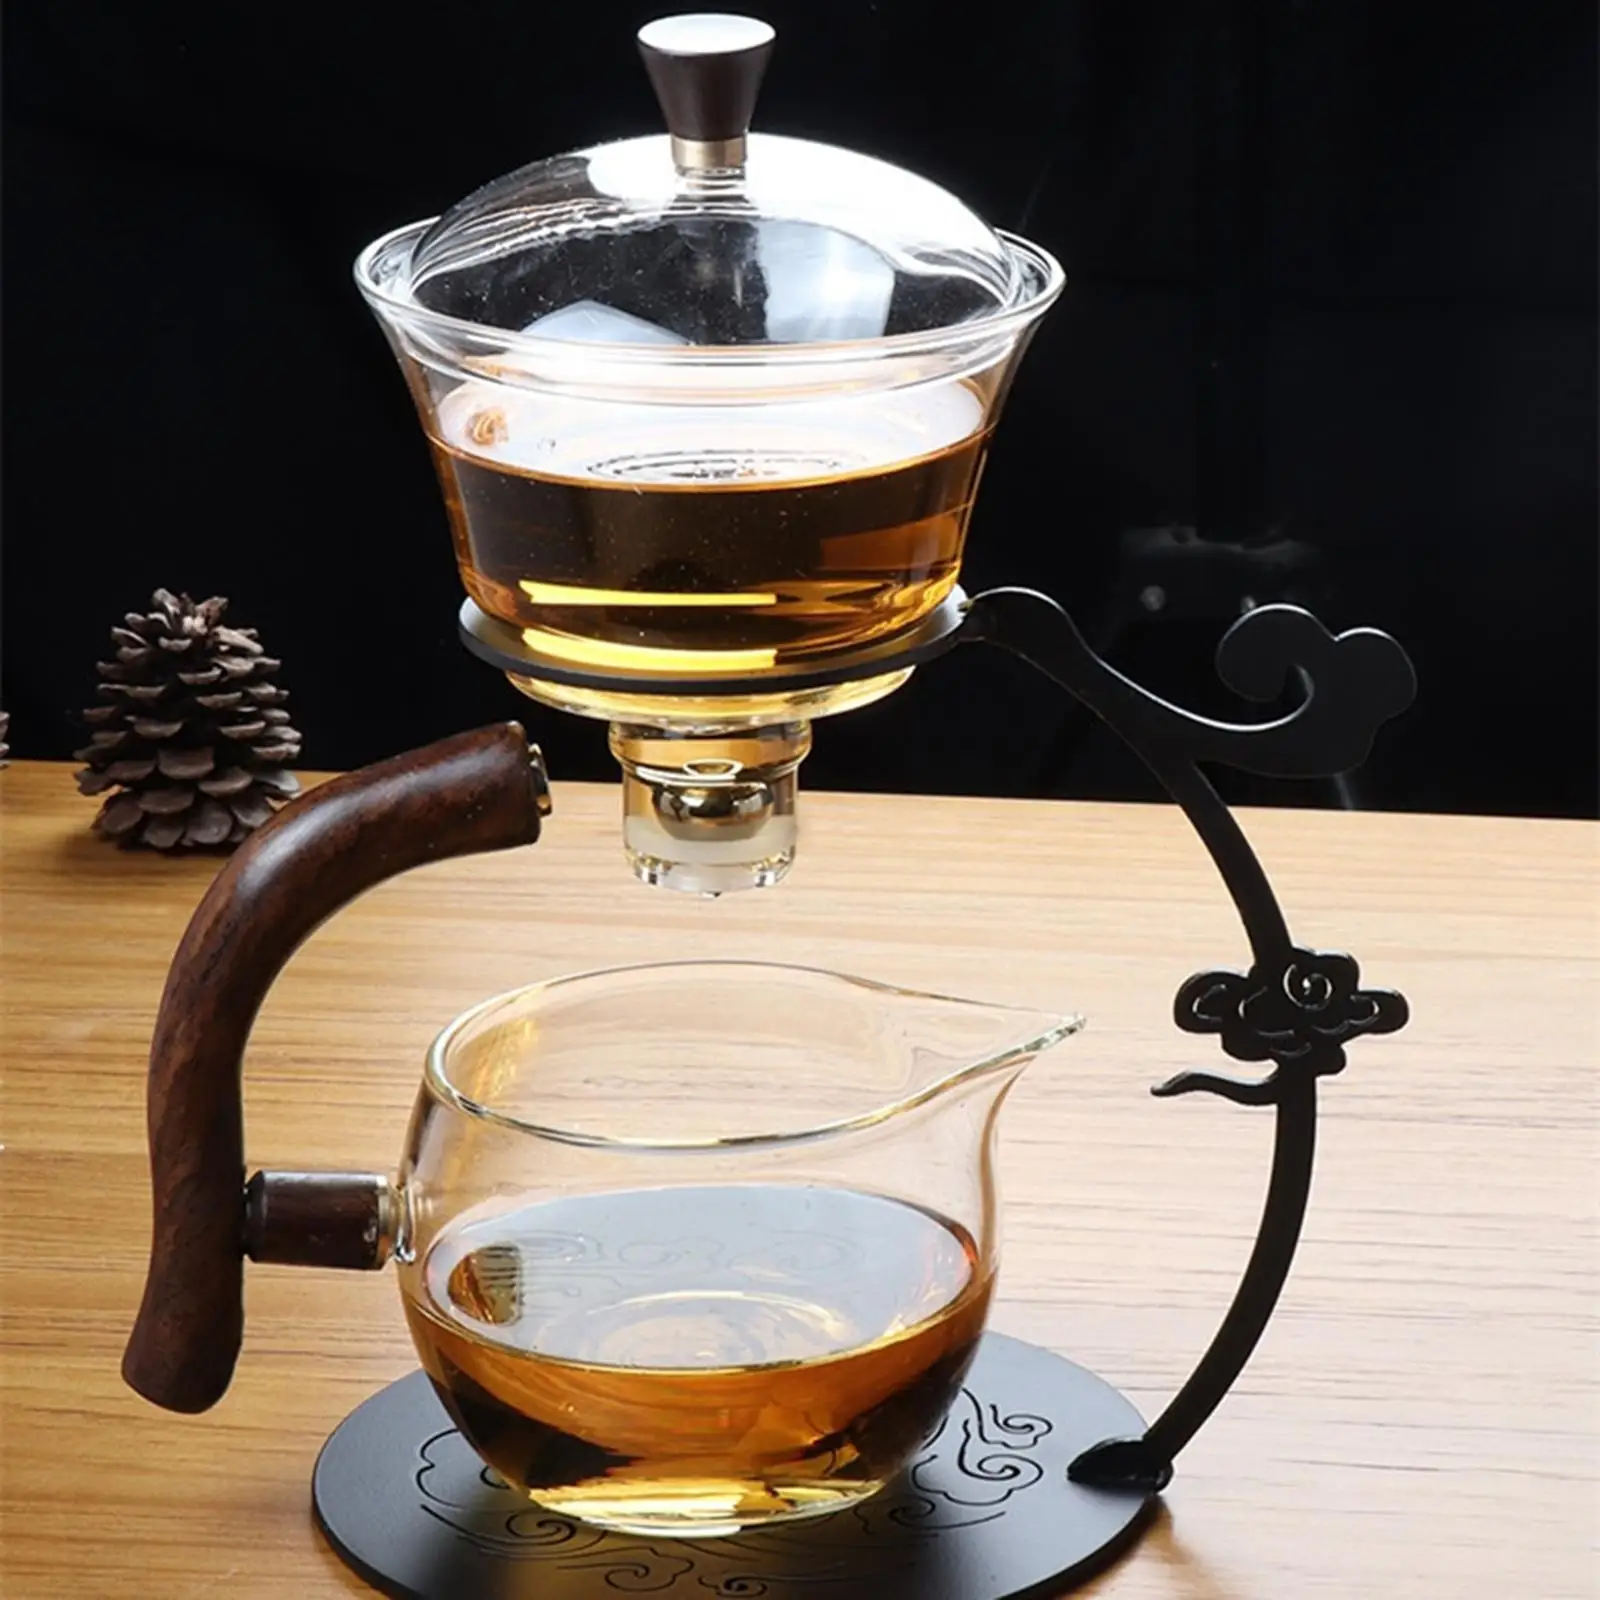 

Стеклянный чайный набор Kungfu, полуавтоматический чайник из боросиликатного стекла для чайных поклонников, подарки